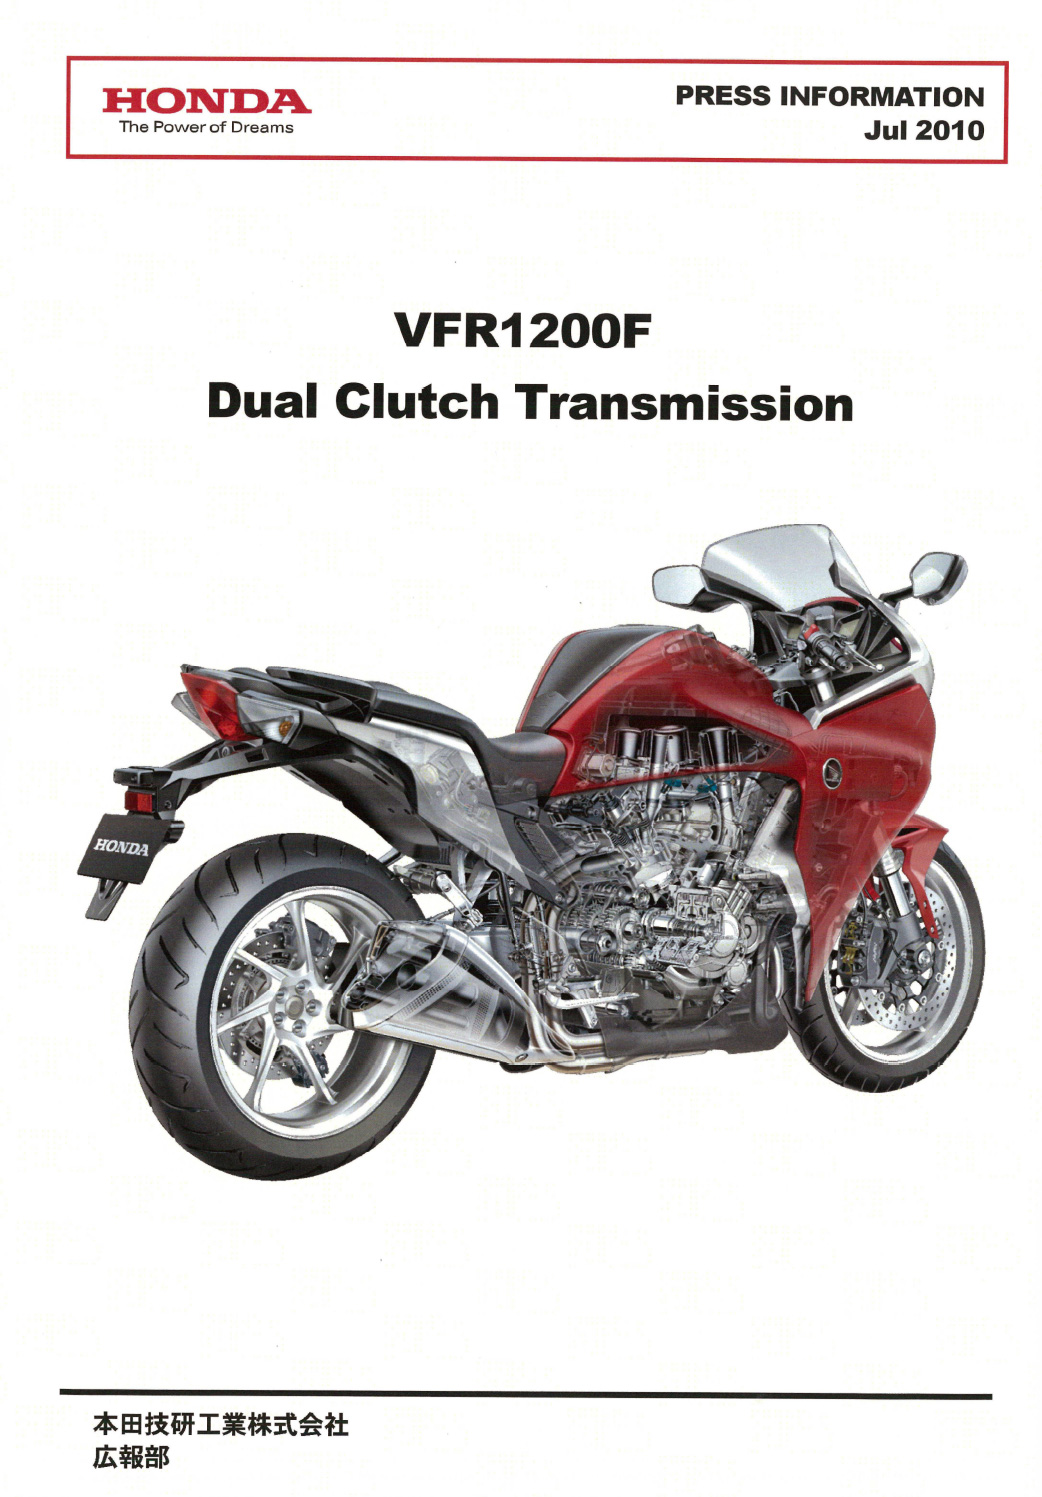 VFR1200F Dual Clutch Transmission